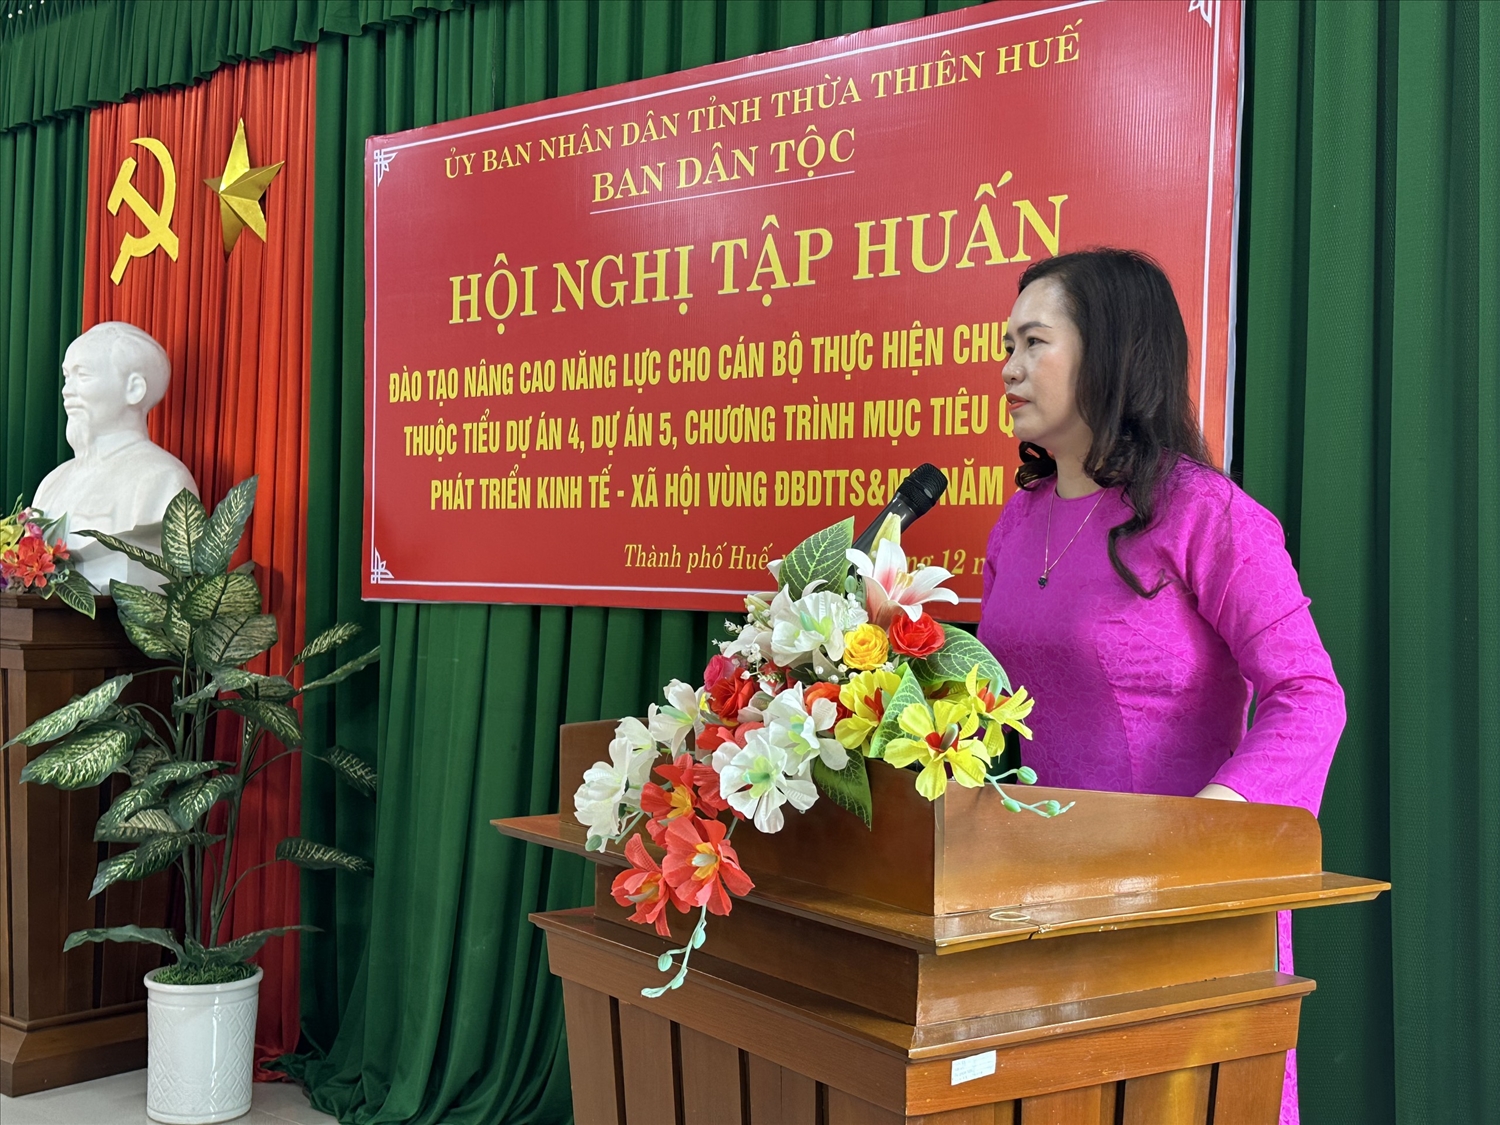 Bà Huyền Tôn Nữ Diễm Thúy, Phó trưởng Ban Dân tộc tỉnh Thừa Thiên Huế phát biểu tại Hội nghị tập huấn